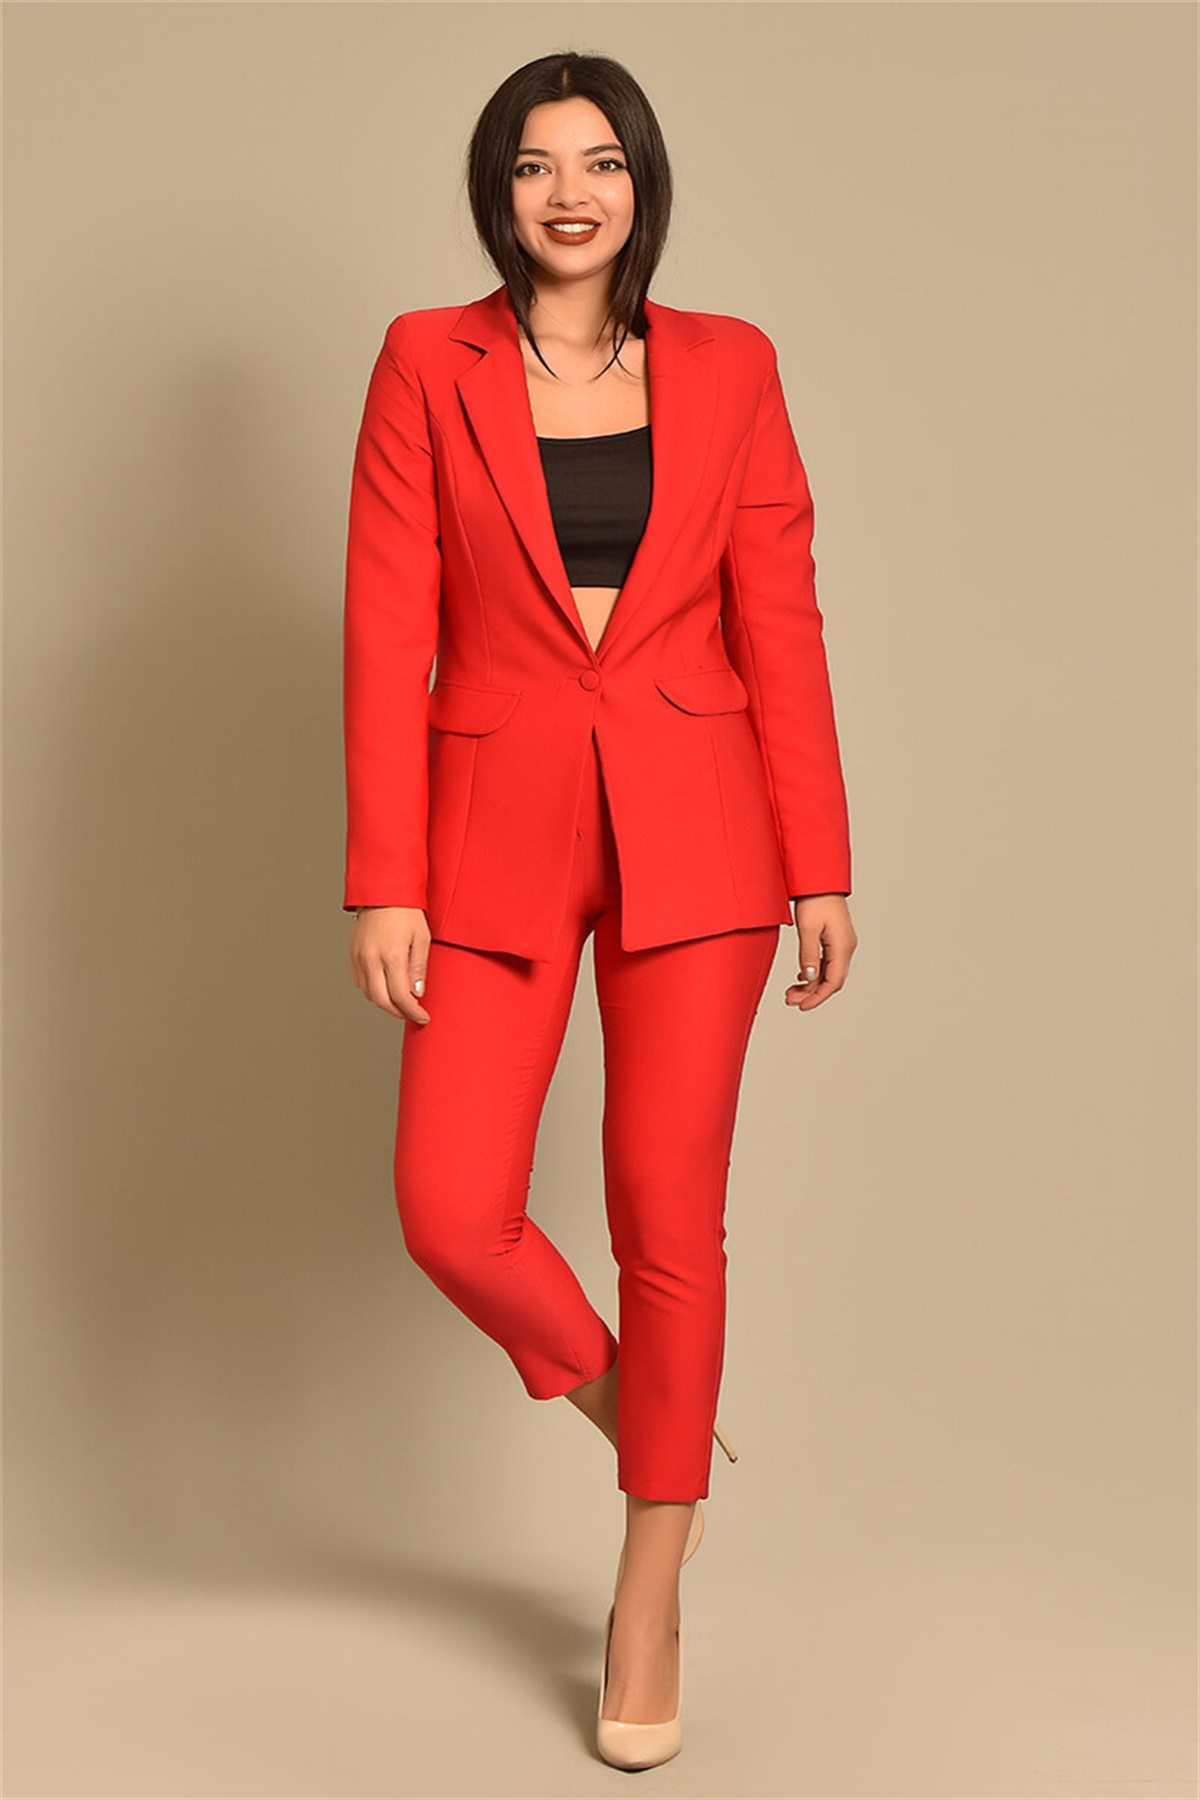 Paige Pantolon Ceket Takım Kırmızı (0151)